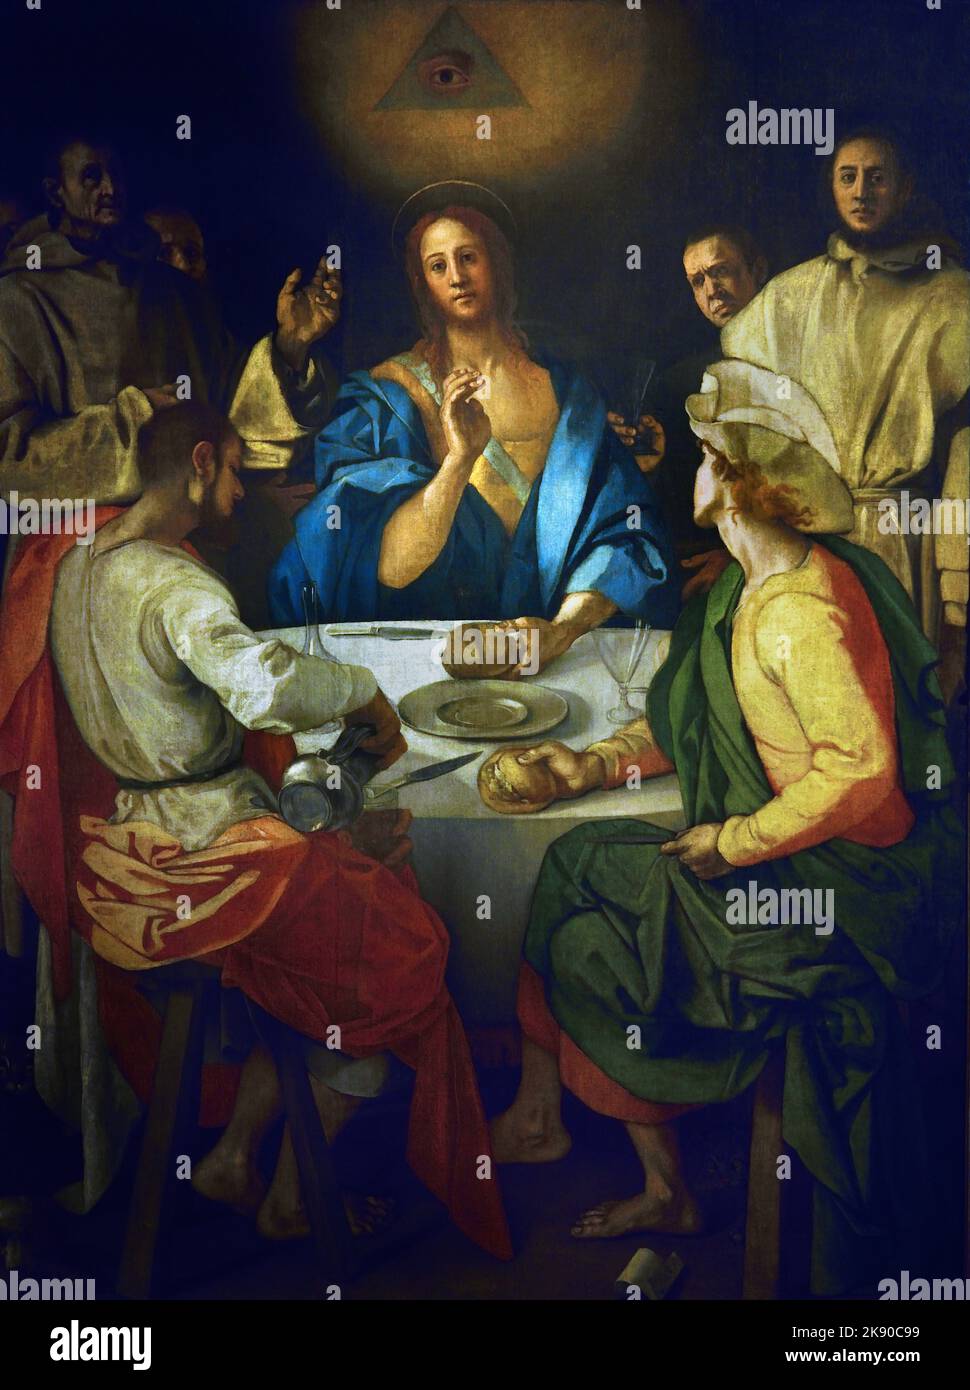 Cena a Emmaus Jacopo Carucci, detto Pontormo (Pontorme, Empoli, 1494 – Firenze, 1552) , Firenze, Italia. ( Il dipinto si ispira all’incisione dello stesso soggetto nella serie Small Passion di Dürer ). Foto Stock